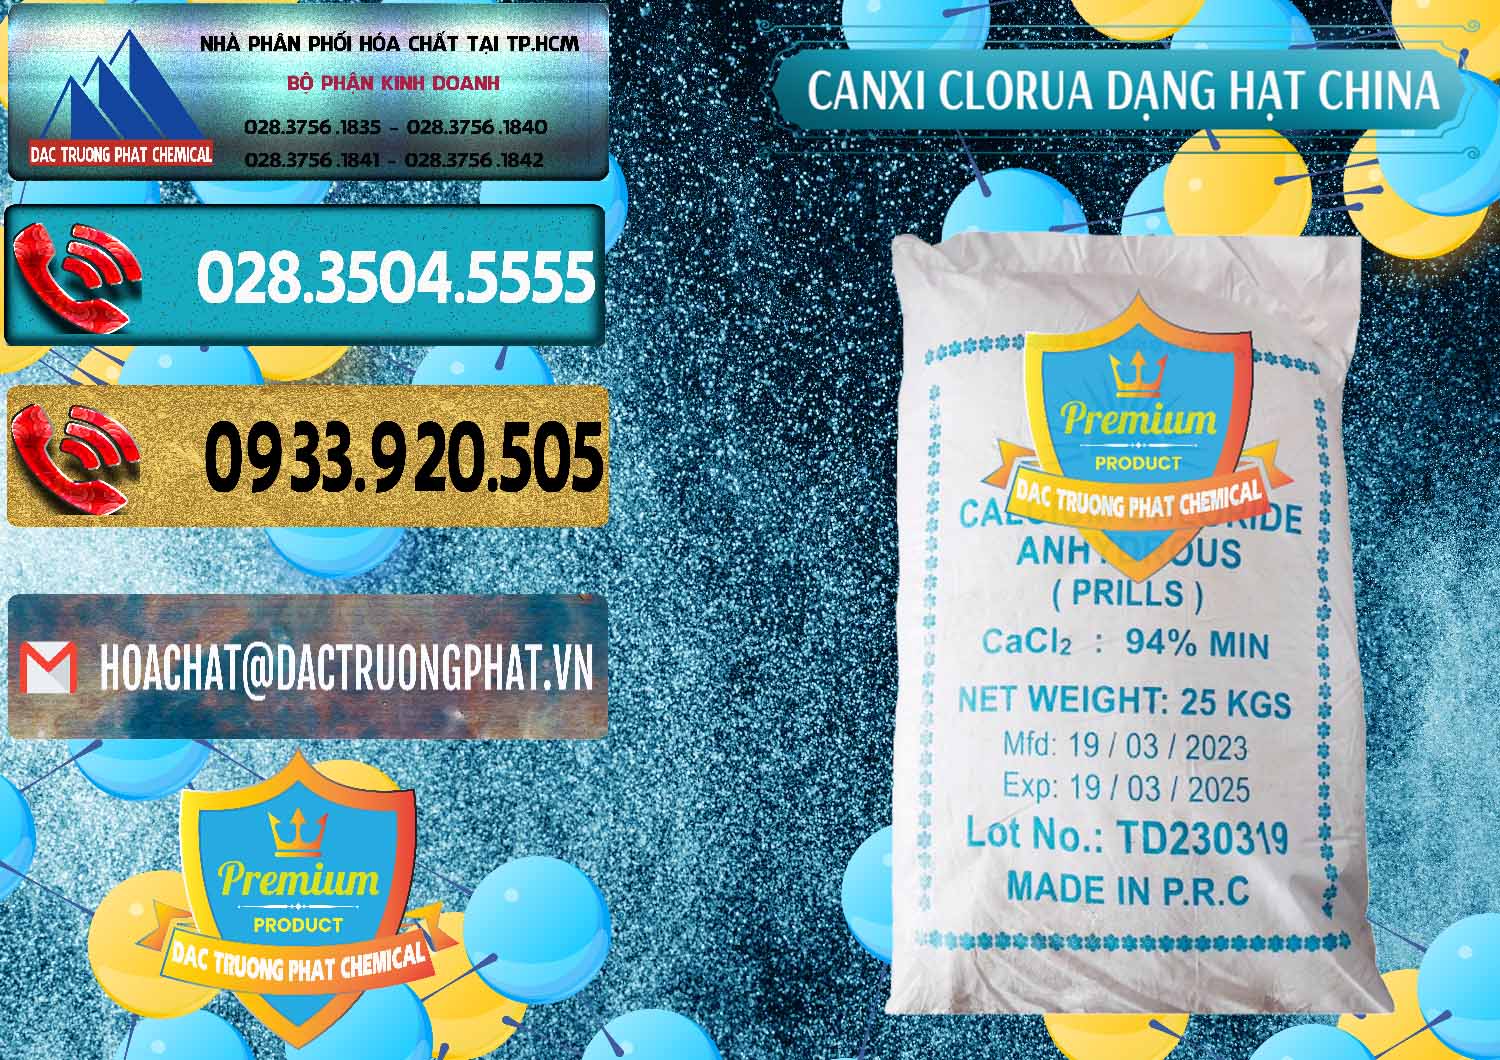 Công ty cung ứng - bán CaCl2 – Canxi Clorua 94% Dạng Hạt Trung Quốc China - 0373 - Phân phối _ cung cấp hóa chất tại TP.HCM - hoachatdetnhuom.com